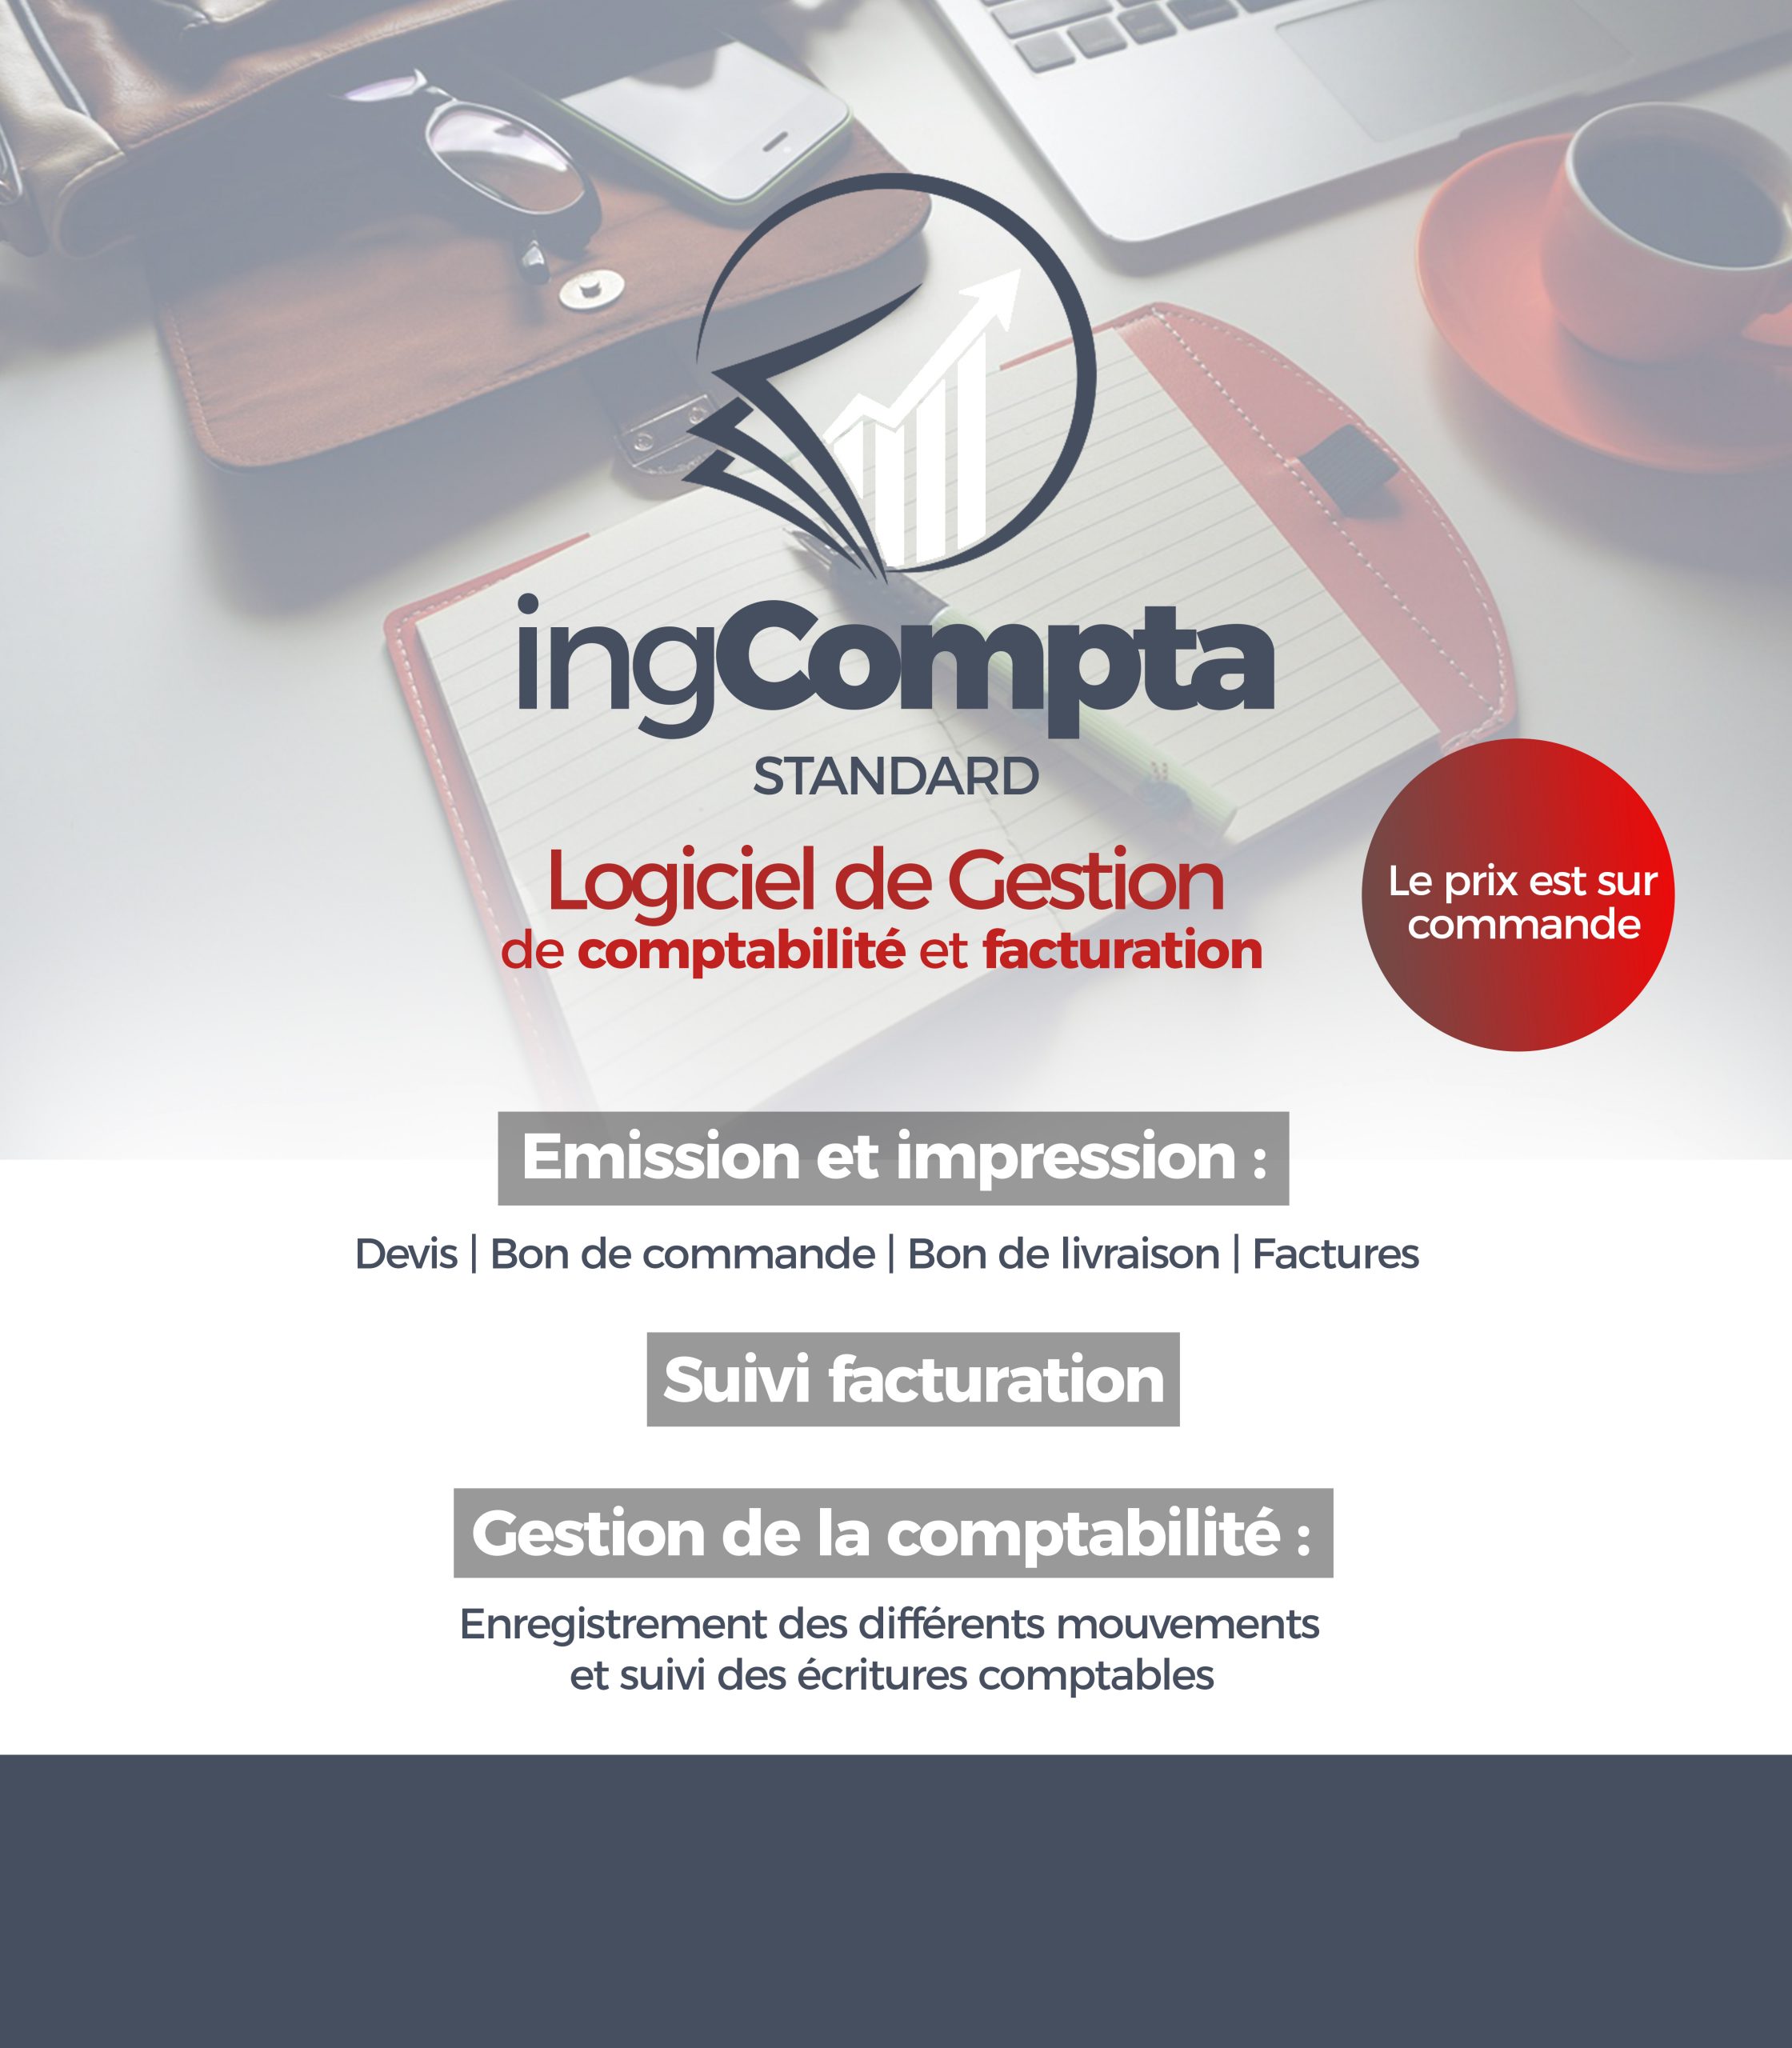 ingCompta Standard v1.0 : Gestion de la comptabilité et la facturation